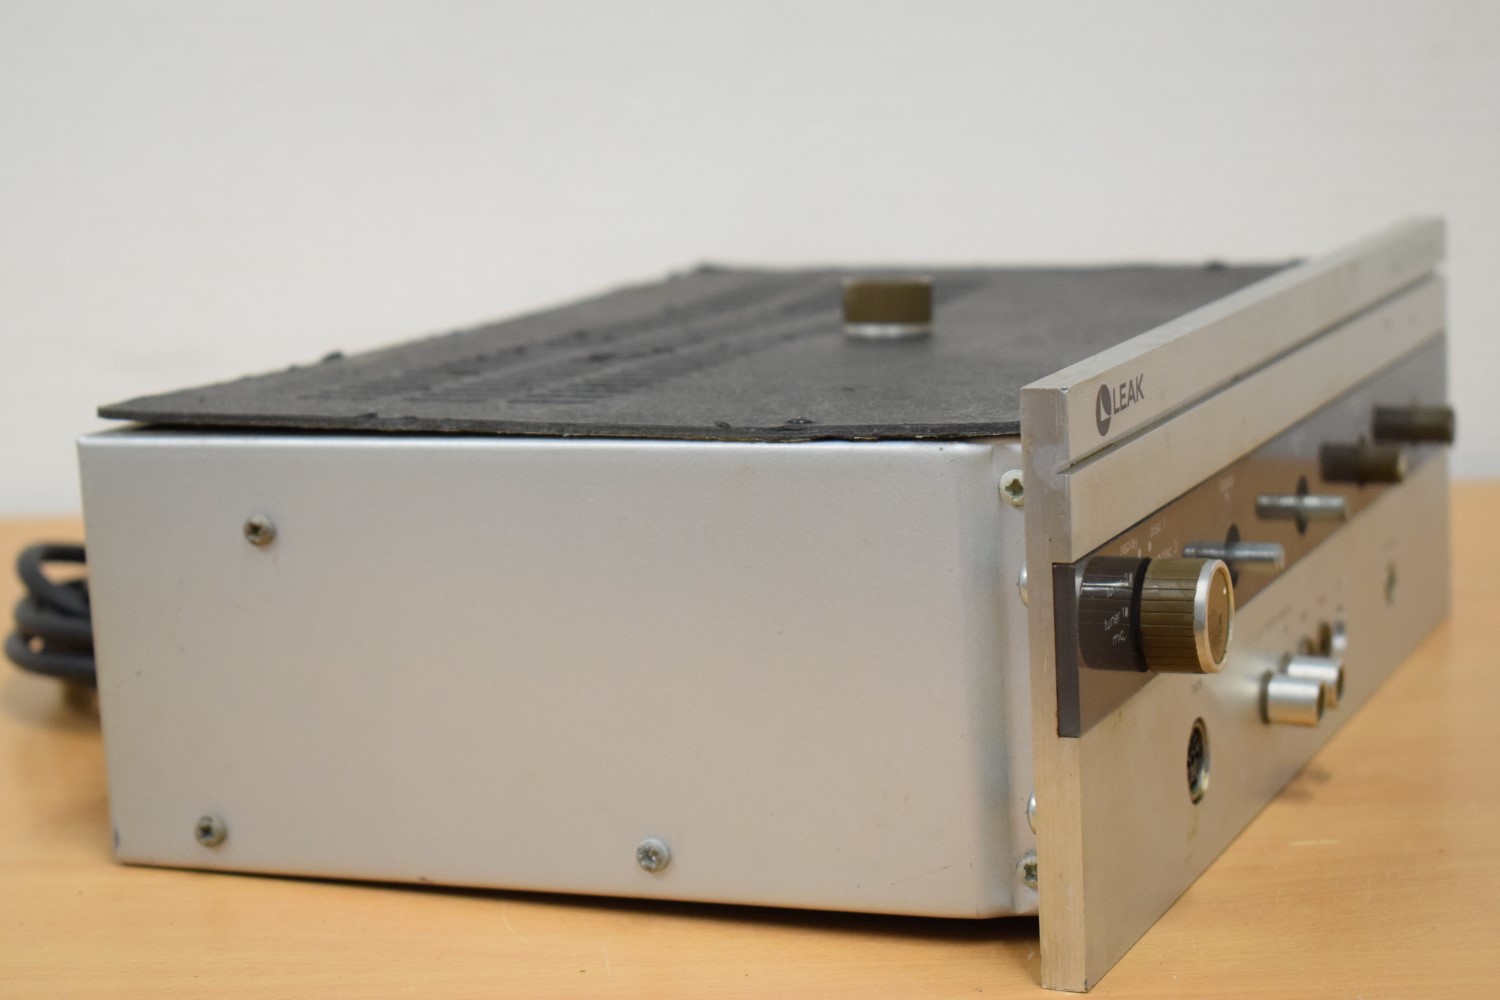 LEAK Delta 30 Stereo Amplifier